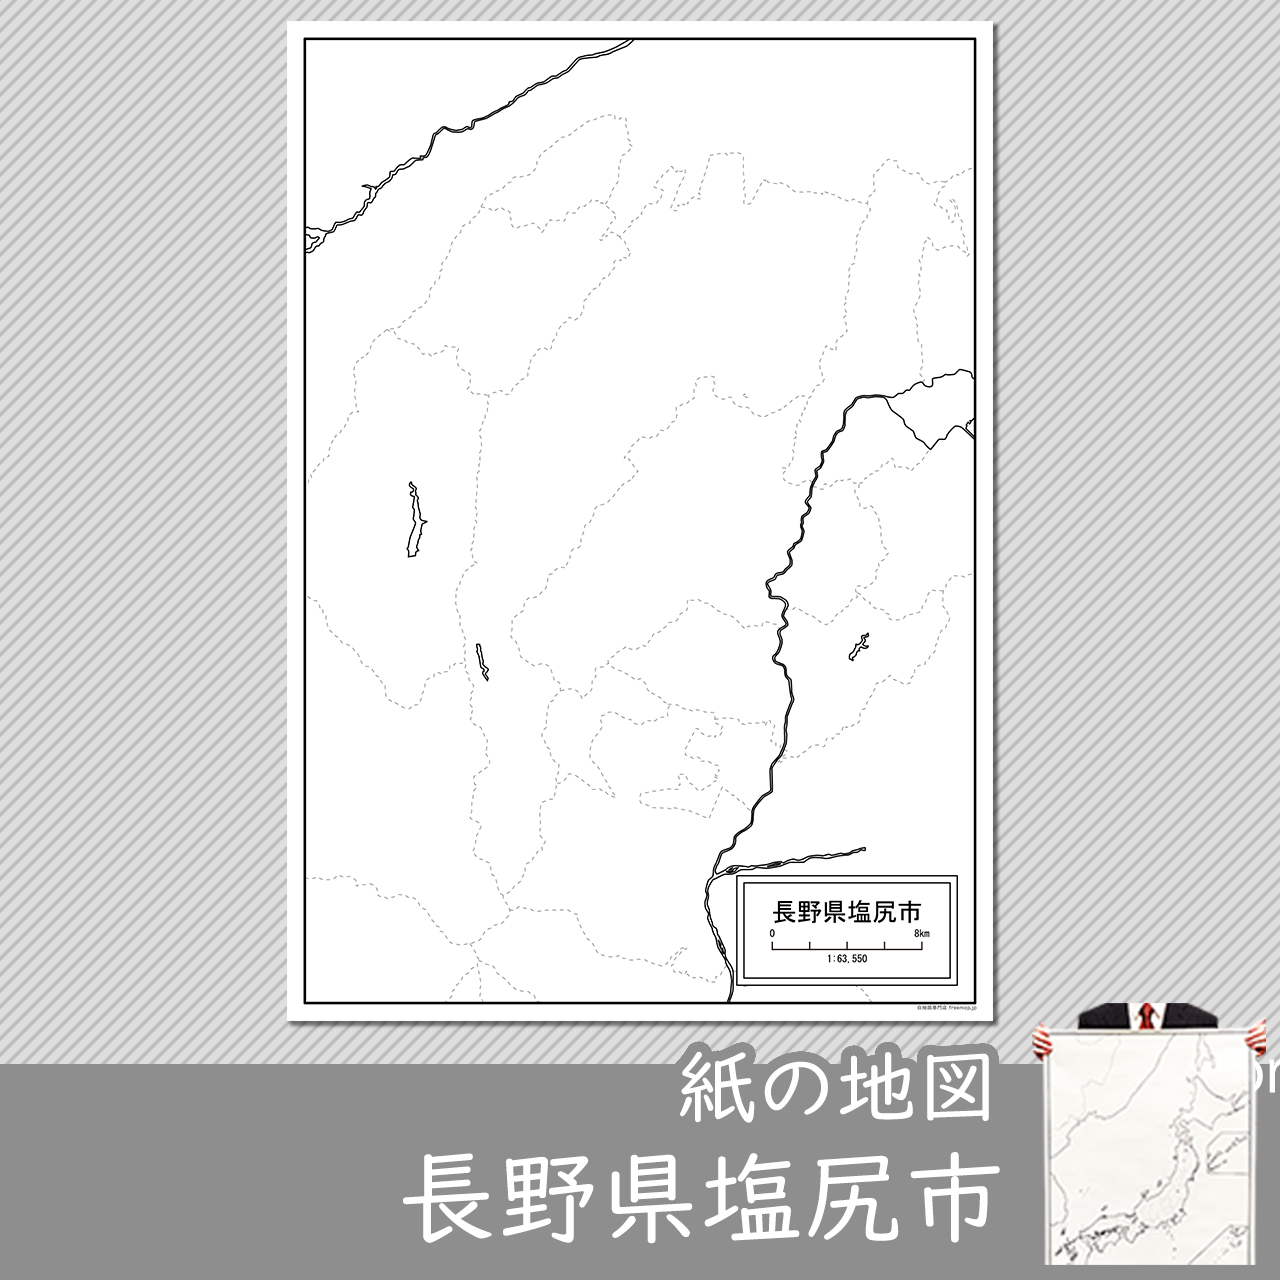 塩尻市の紙の白地図のサムネイル